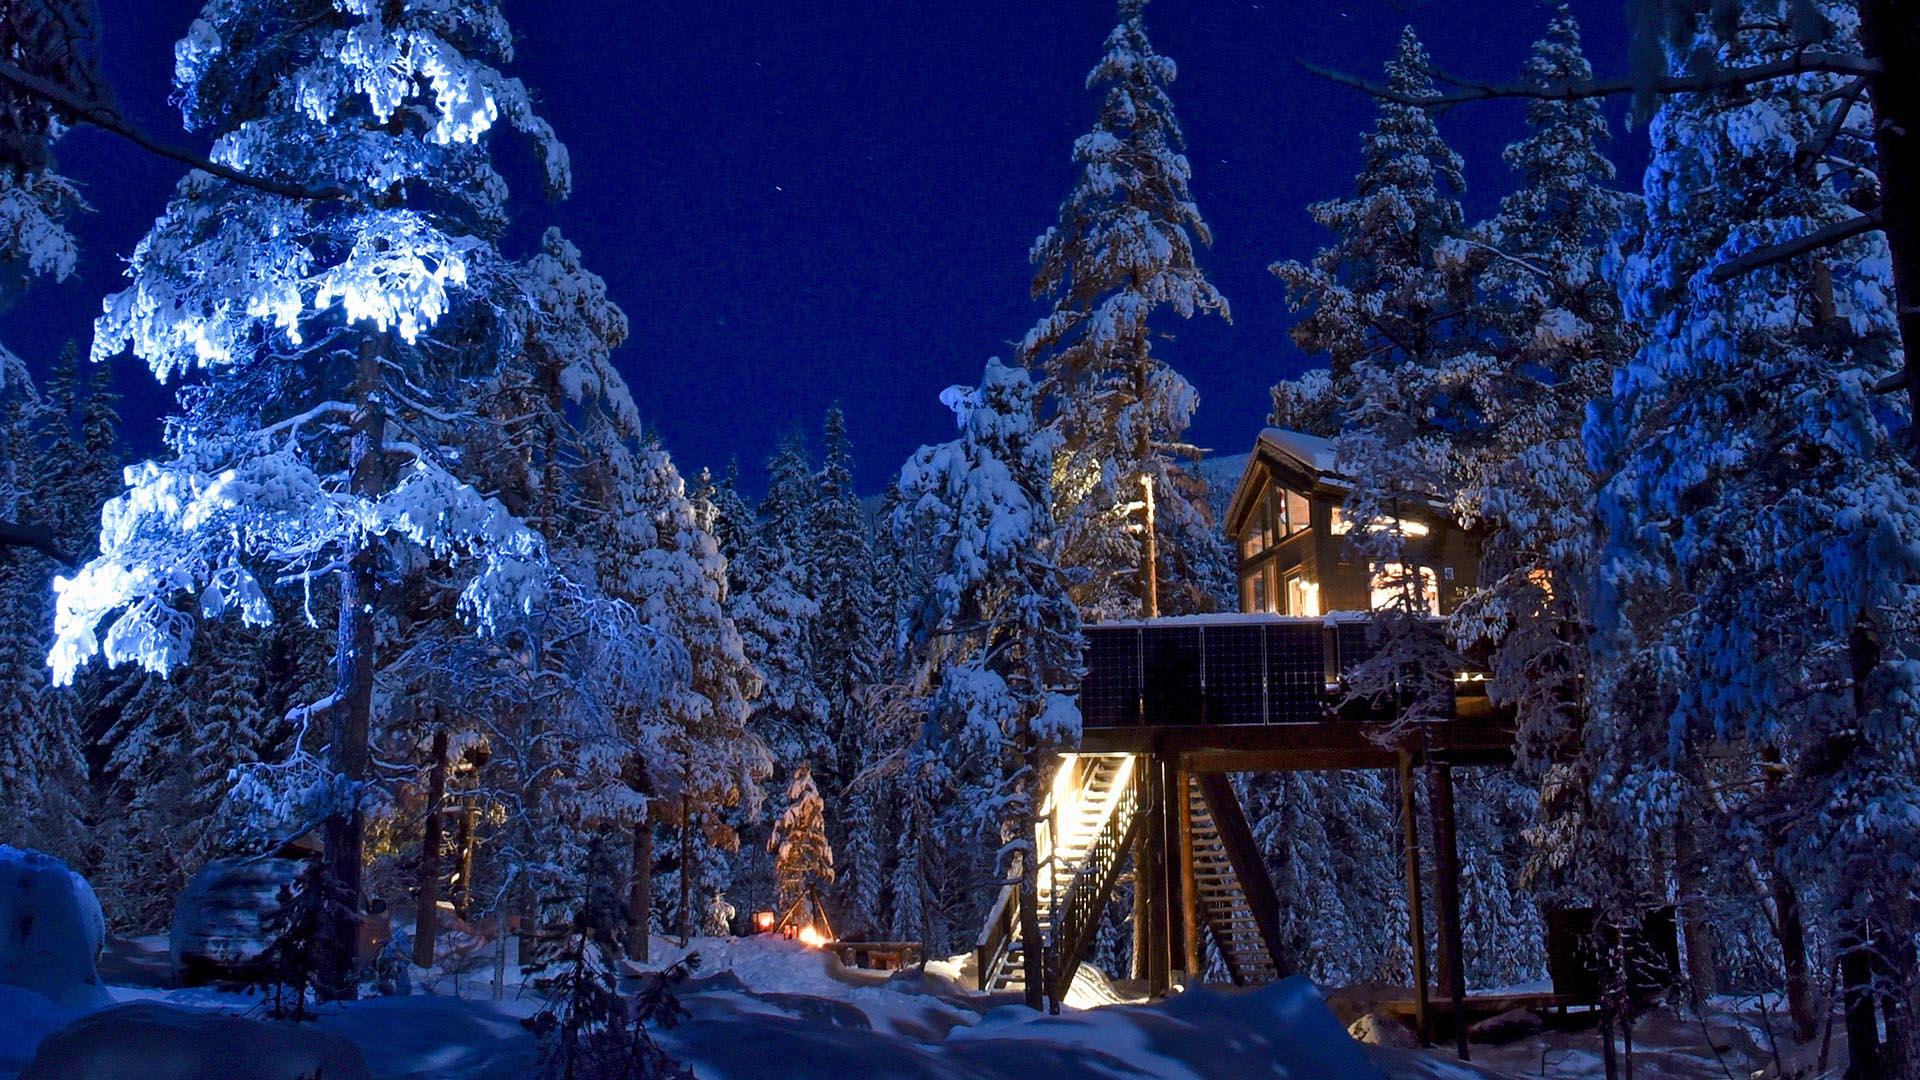 Eine Baumhütte im tief verschneiten Kiefernwald bei Nacht. Das Licht der Hütte färbt Schnee und Himmel tief blau.